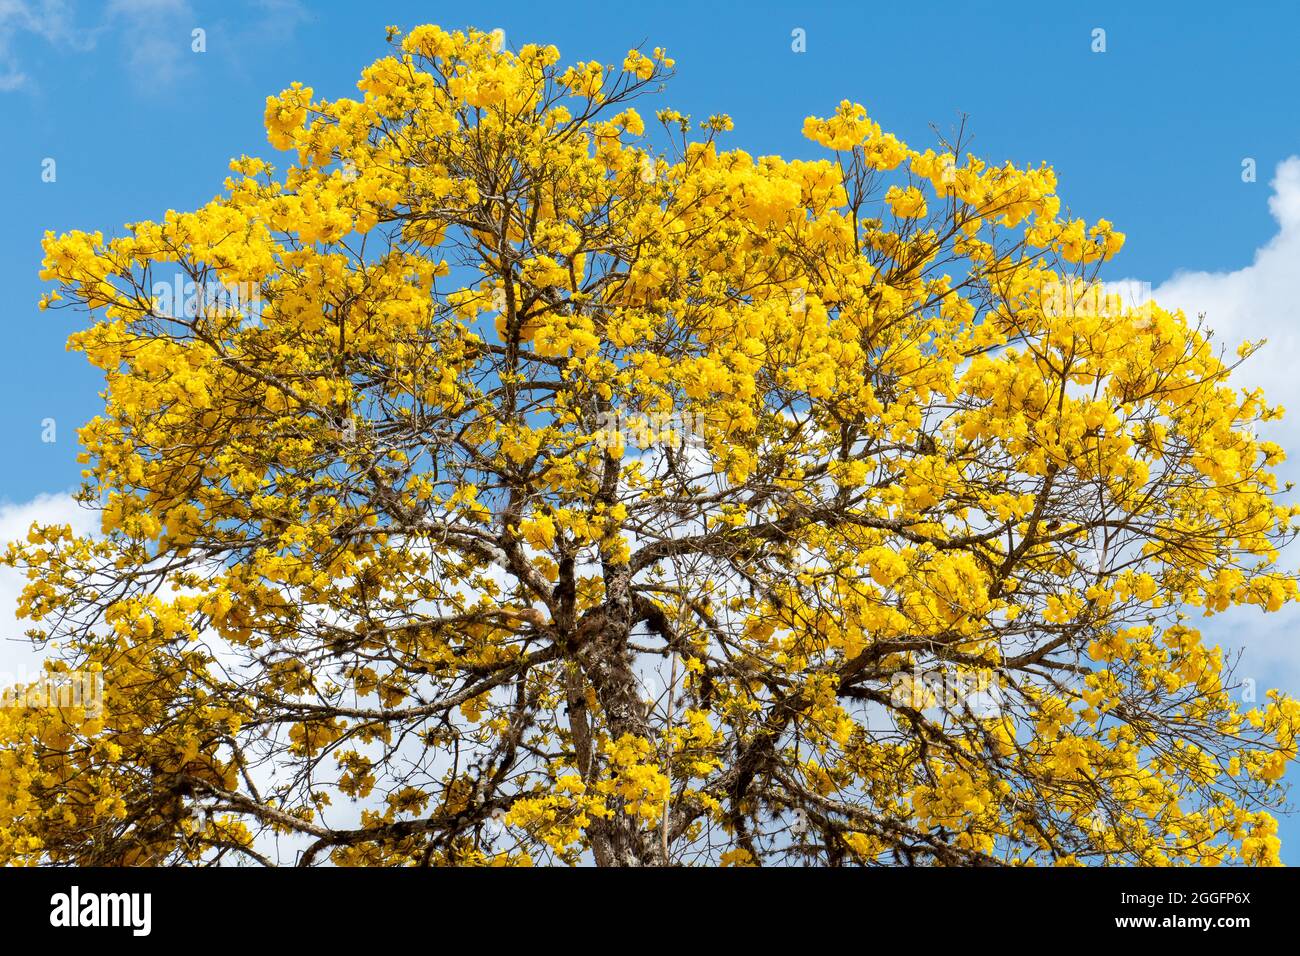 El árbol de trompeta de oro, Handroanthus albus. La flor es la flor nacional de Brasil, mientras que el árbol en sí es el árbol nacional de Brasil. Foto de stock